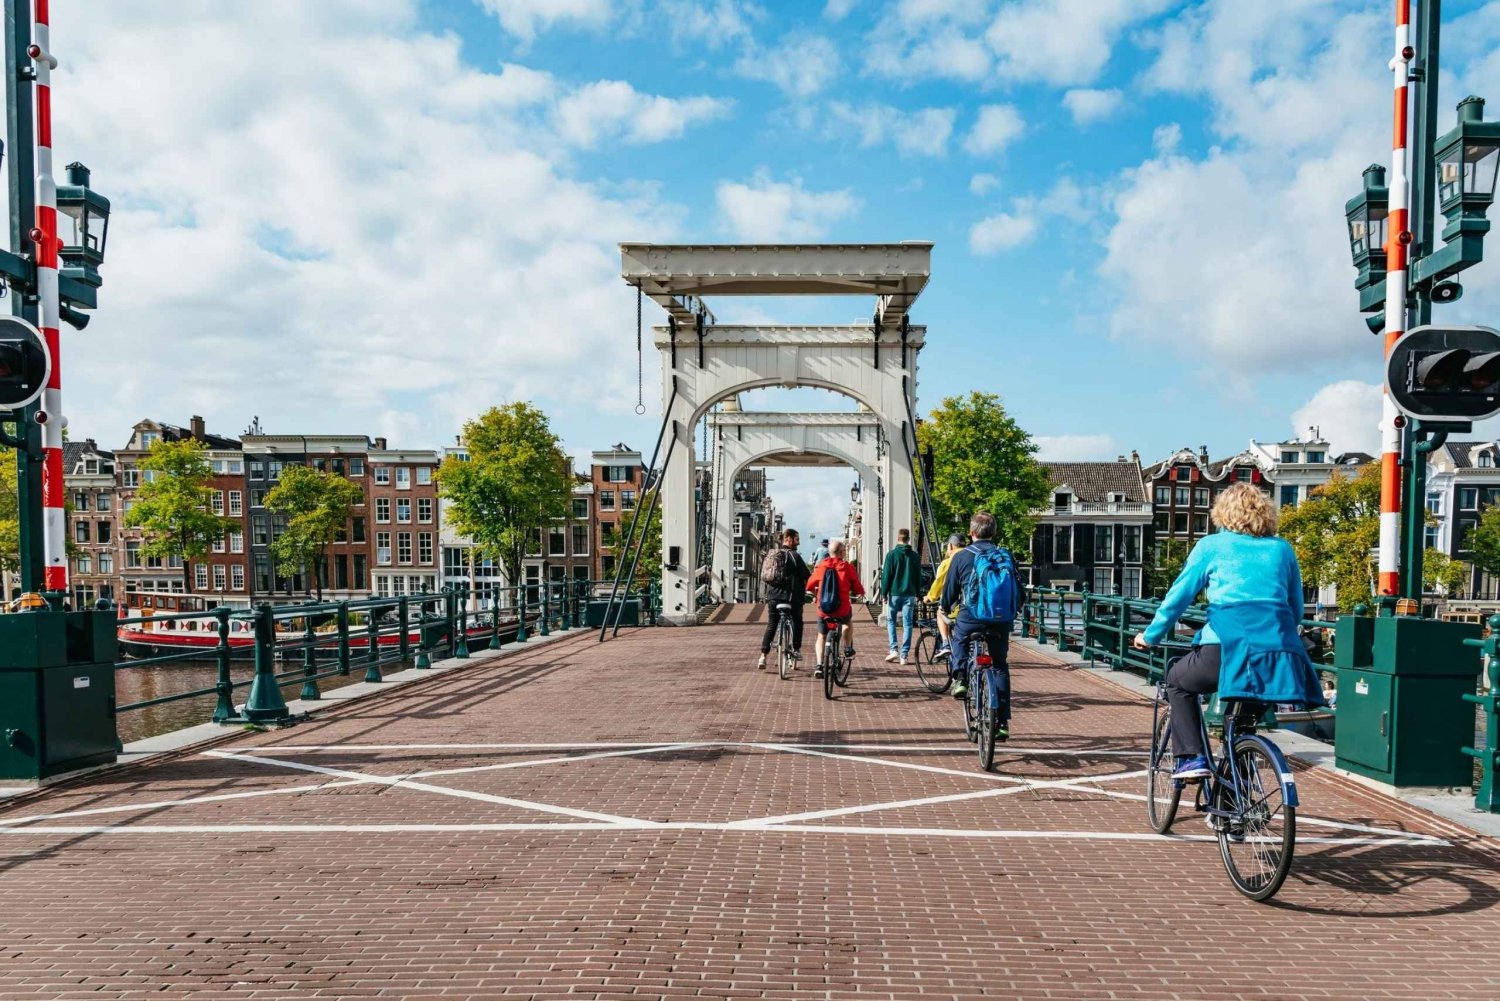 Udforsk Amsterdam som en lokal på cykel med valgfrit krydstogt